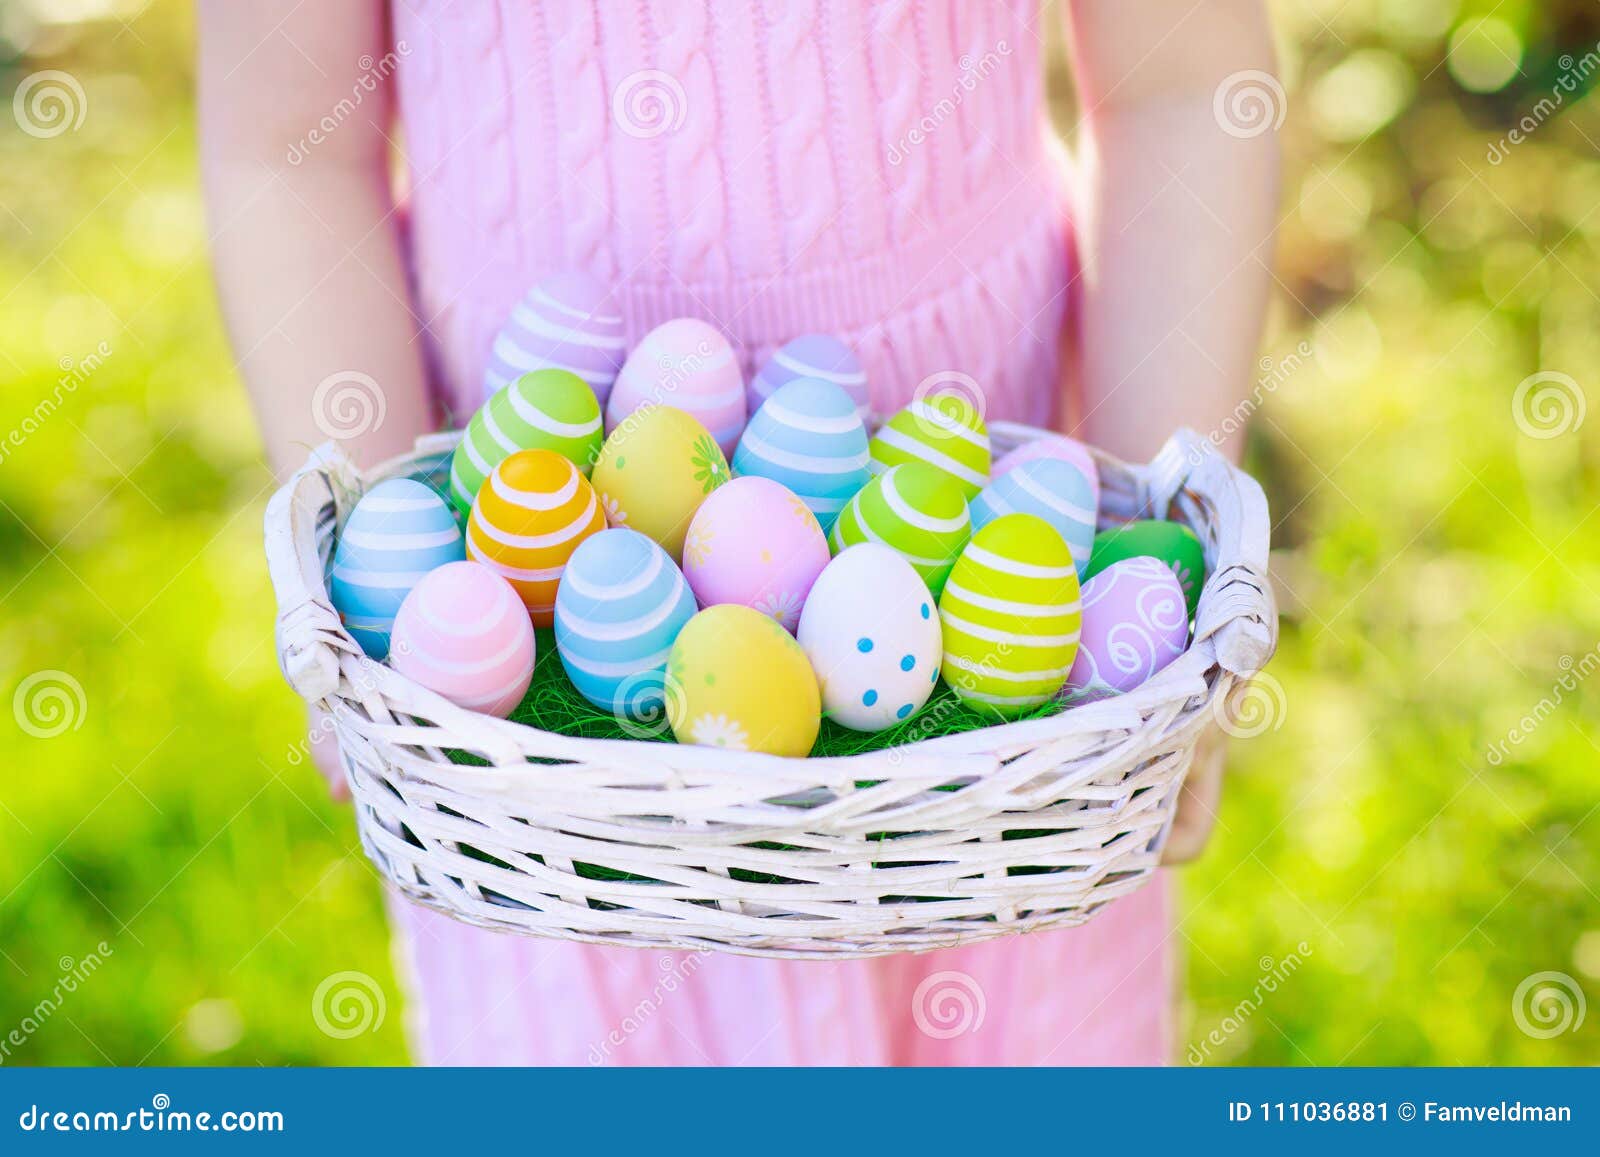 在复活节彩蛋的孩子寻找与蛋篮子. 背景男孩逗人喜爱的复活节彩蛋蛋新草绿色隐藏的搜索查出搜索白色 有蛋篮子的小女孩 搜寻甜点和巧克力的孩子在复活节早晨在庭院里 有春天柔和的淡色彩装饰的孩子 在桃红色礼服的孩子用被绘的鸡蛋